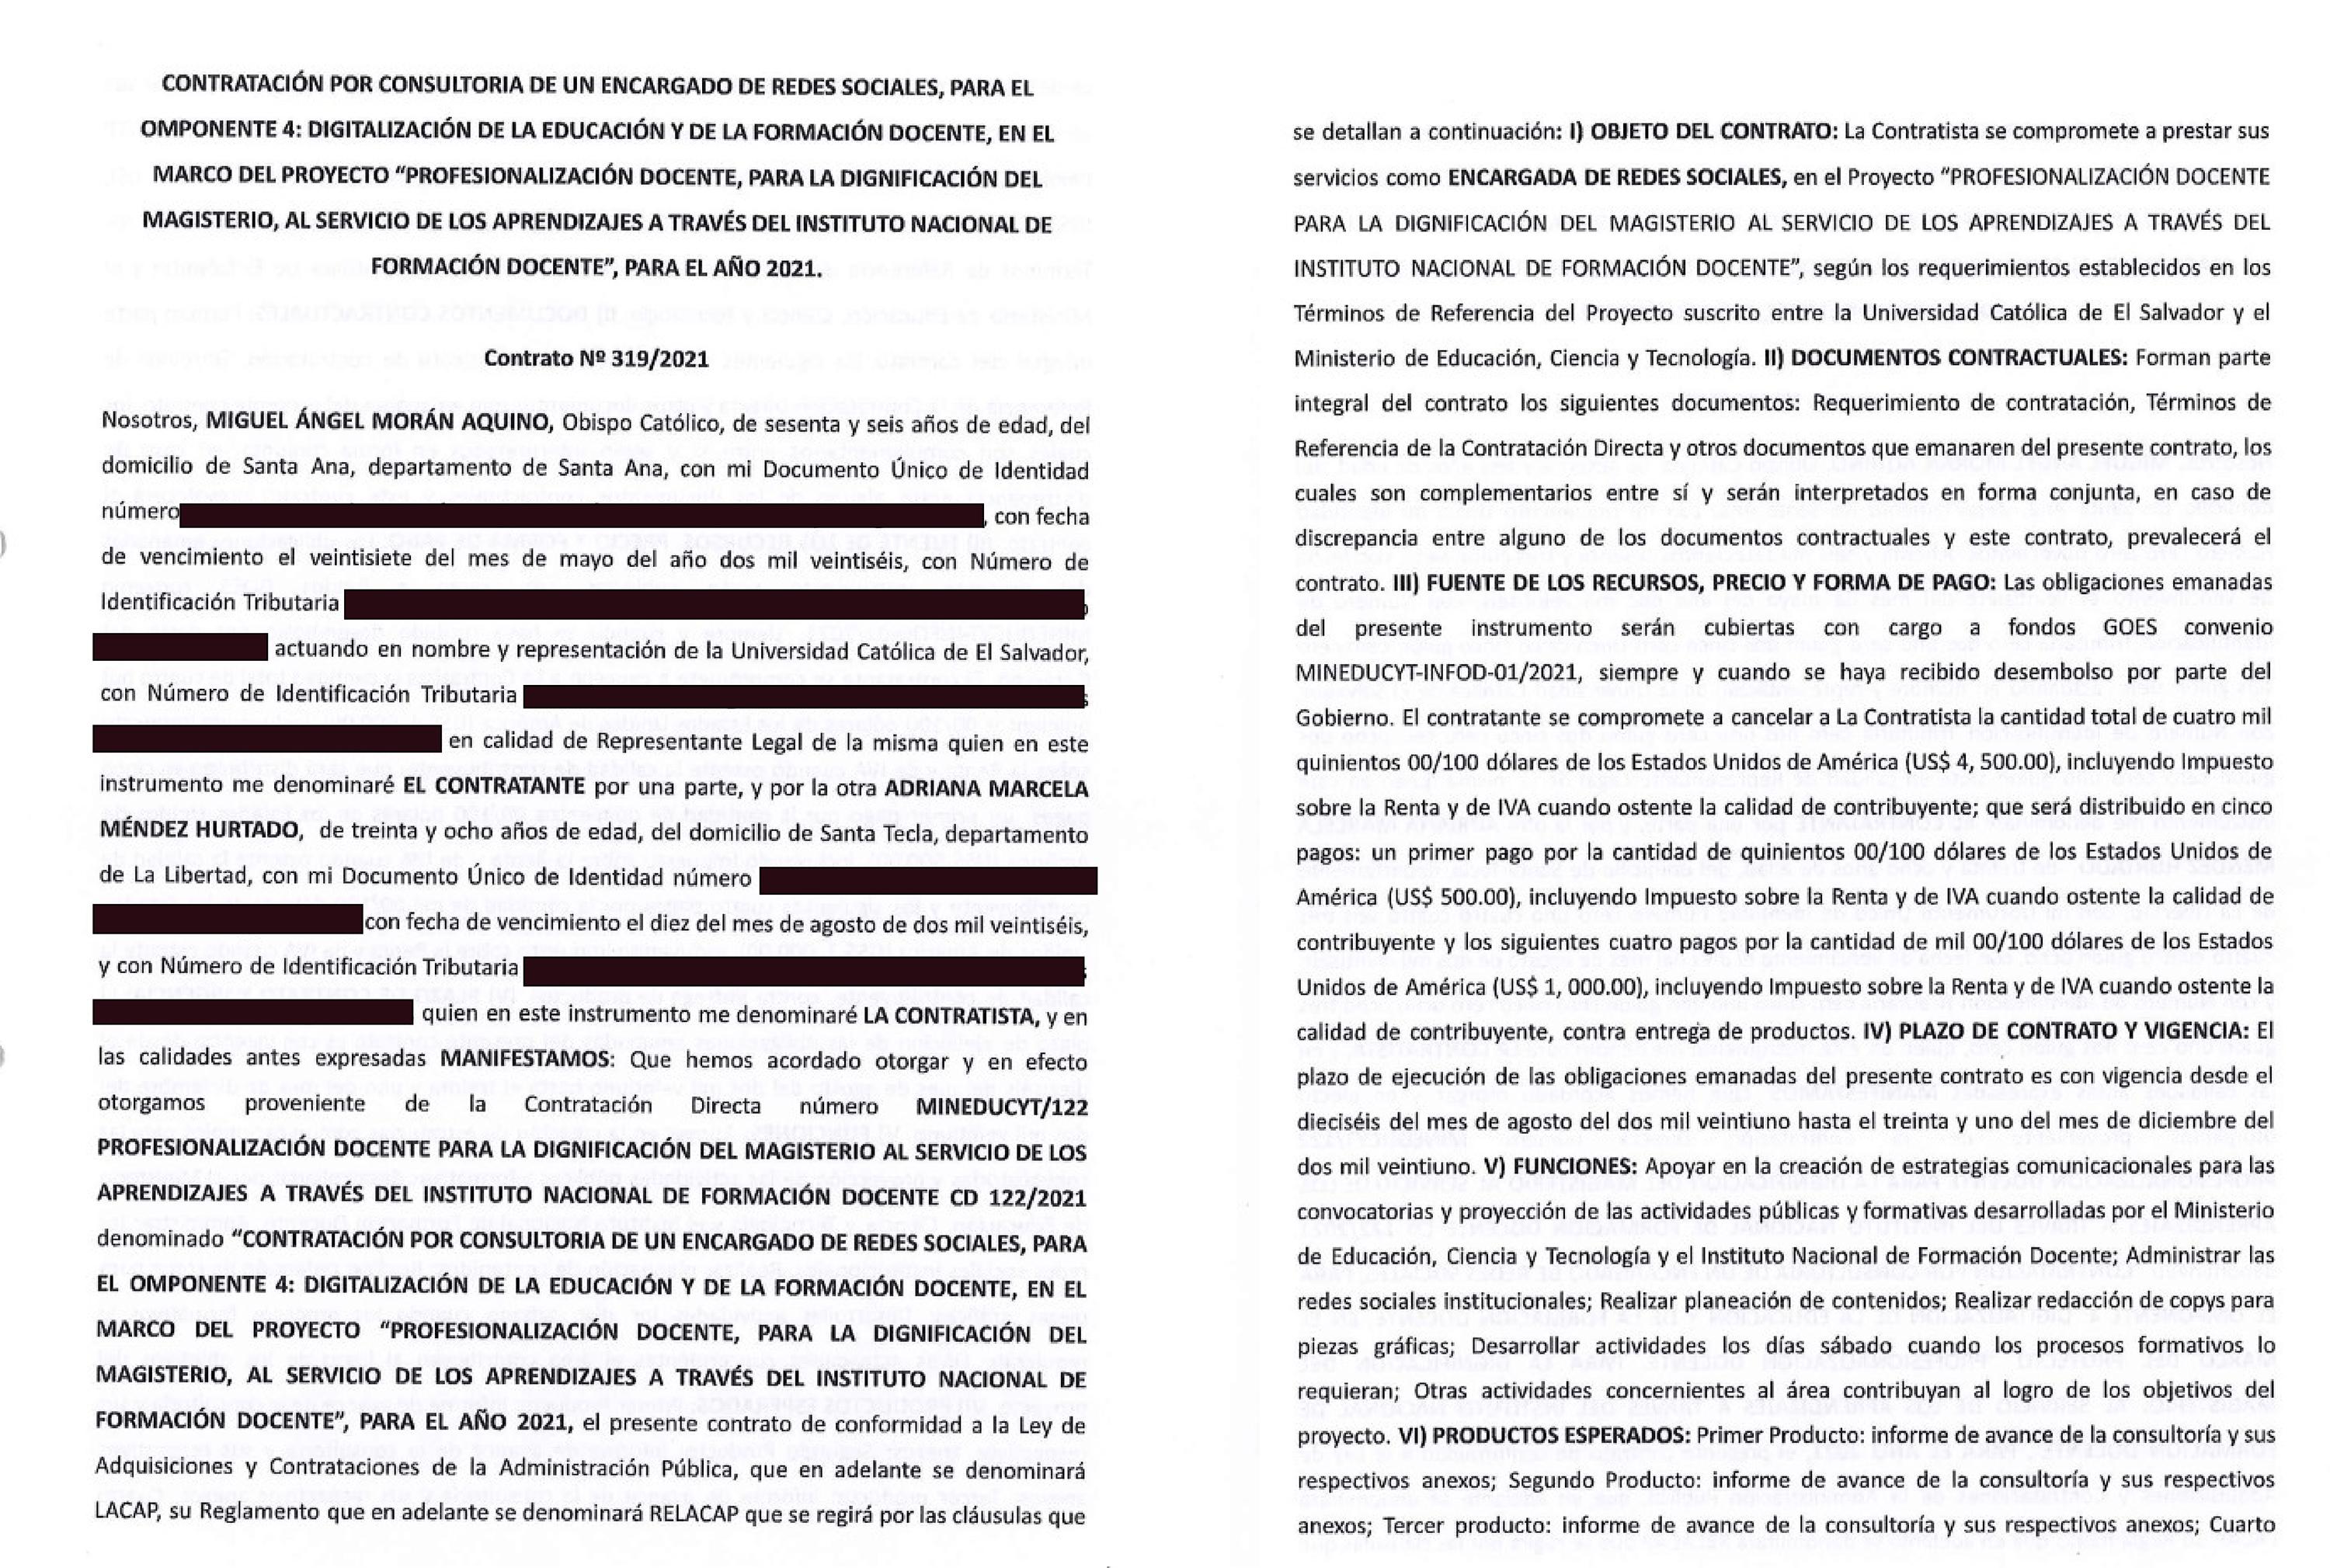 Copia del contrato entre Adriana Méndez y el Ministerio de Educación.